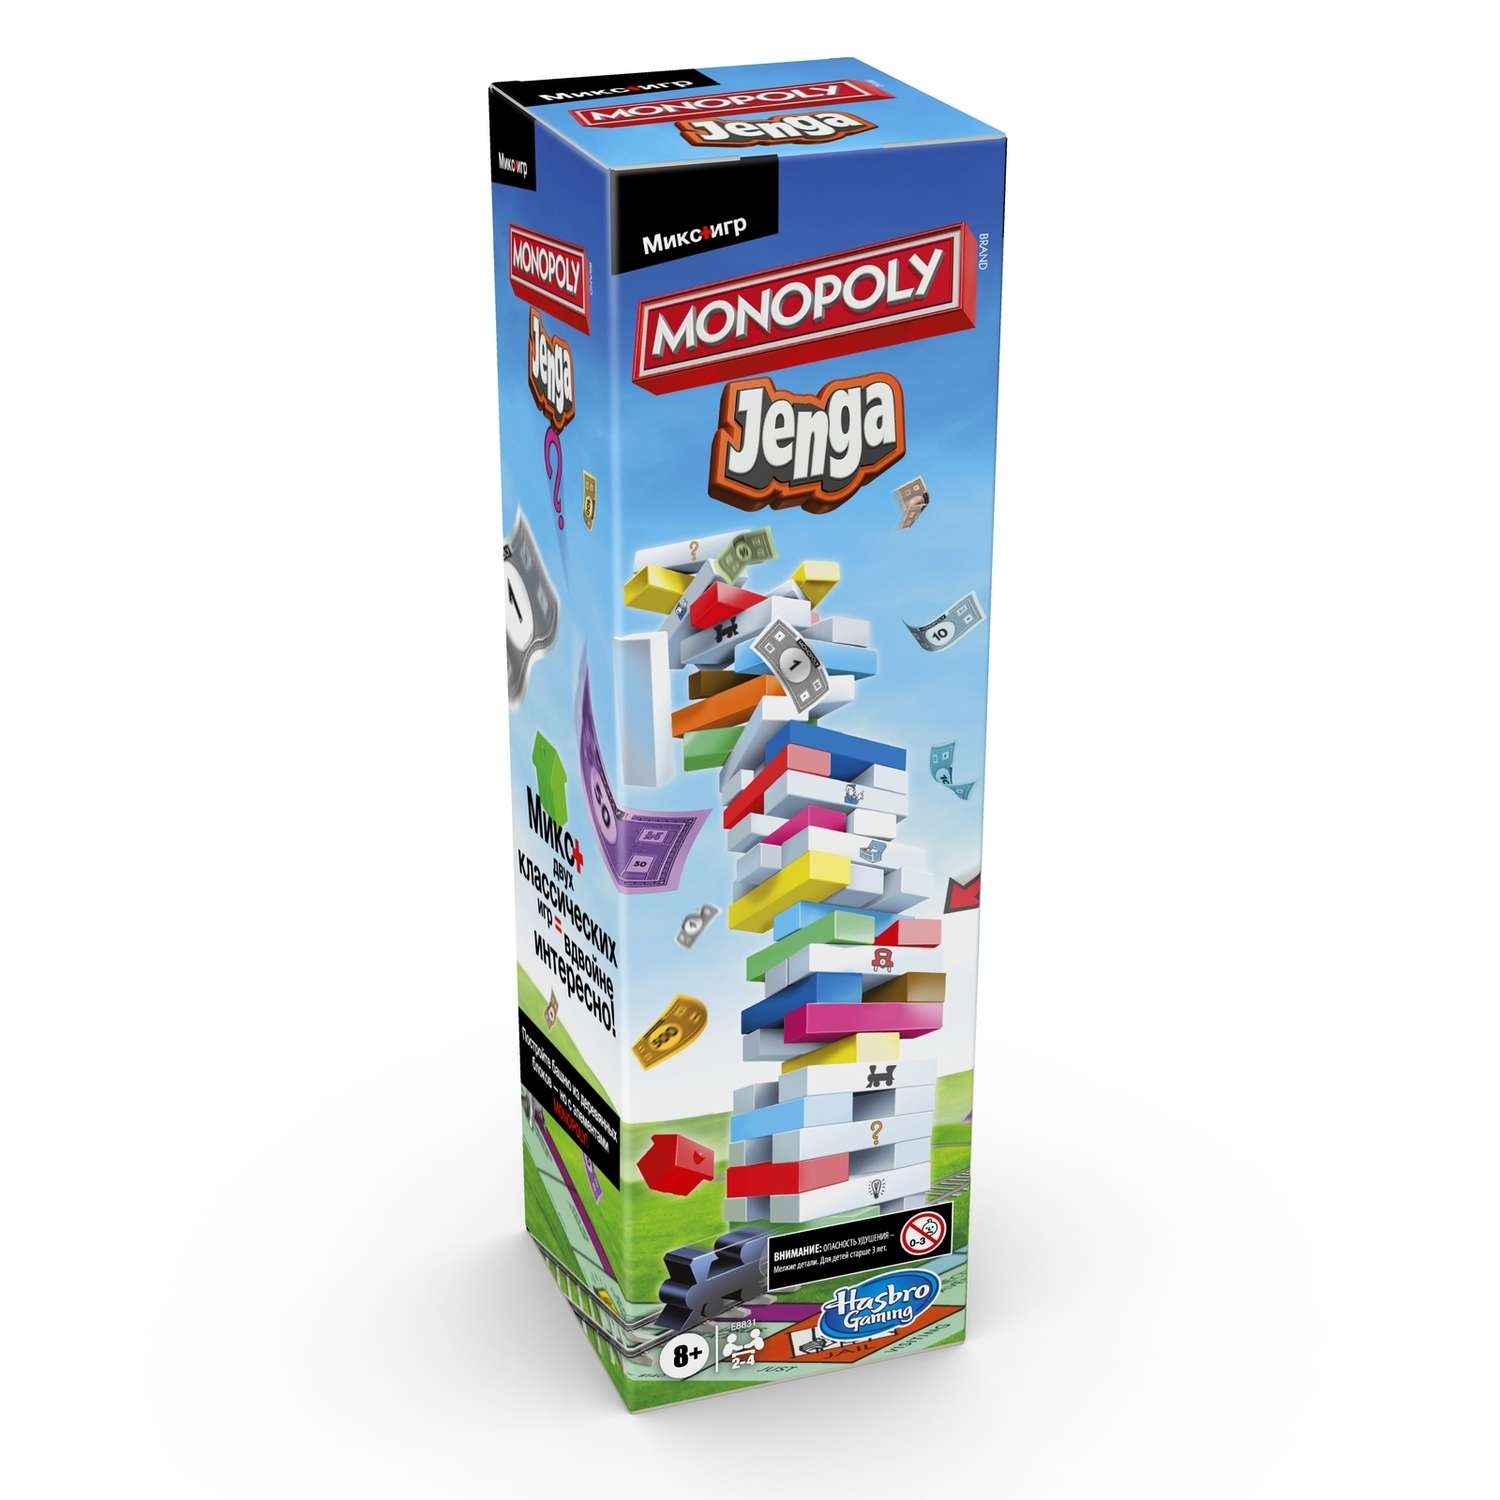 Игра Monopoly (Games) Монополия Дженга E8831121 - фото 2